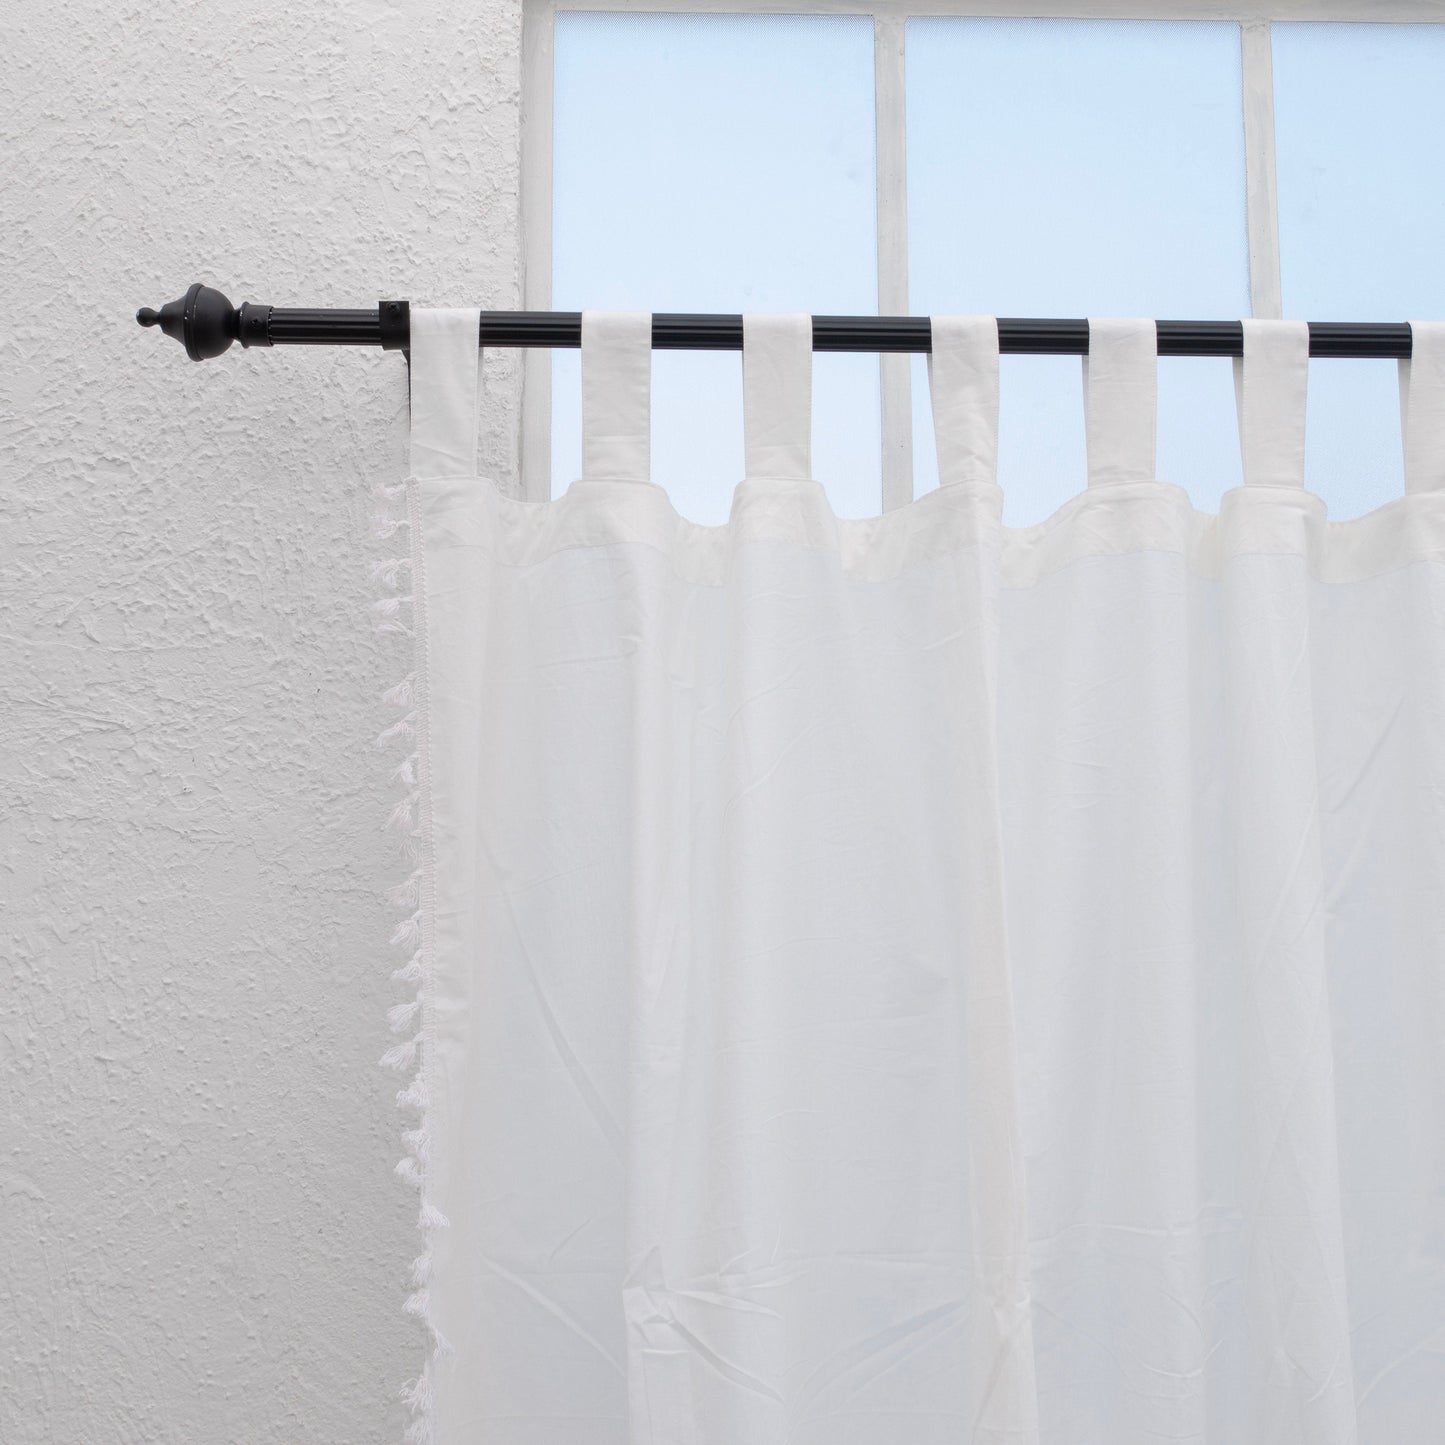 White Cotton Fringes Curtain - Set of 2 - I